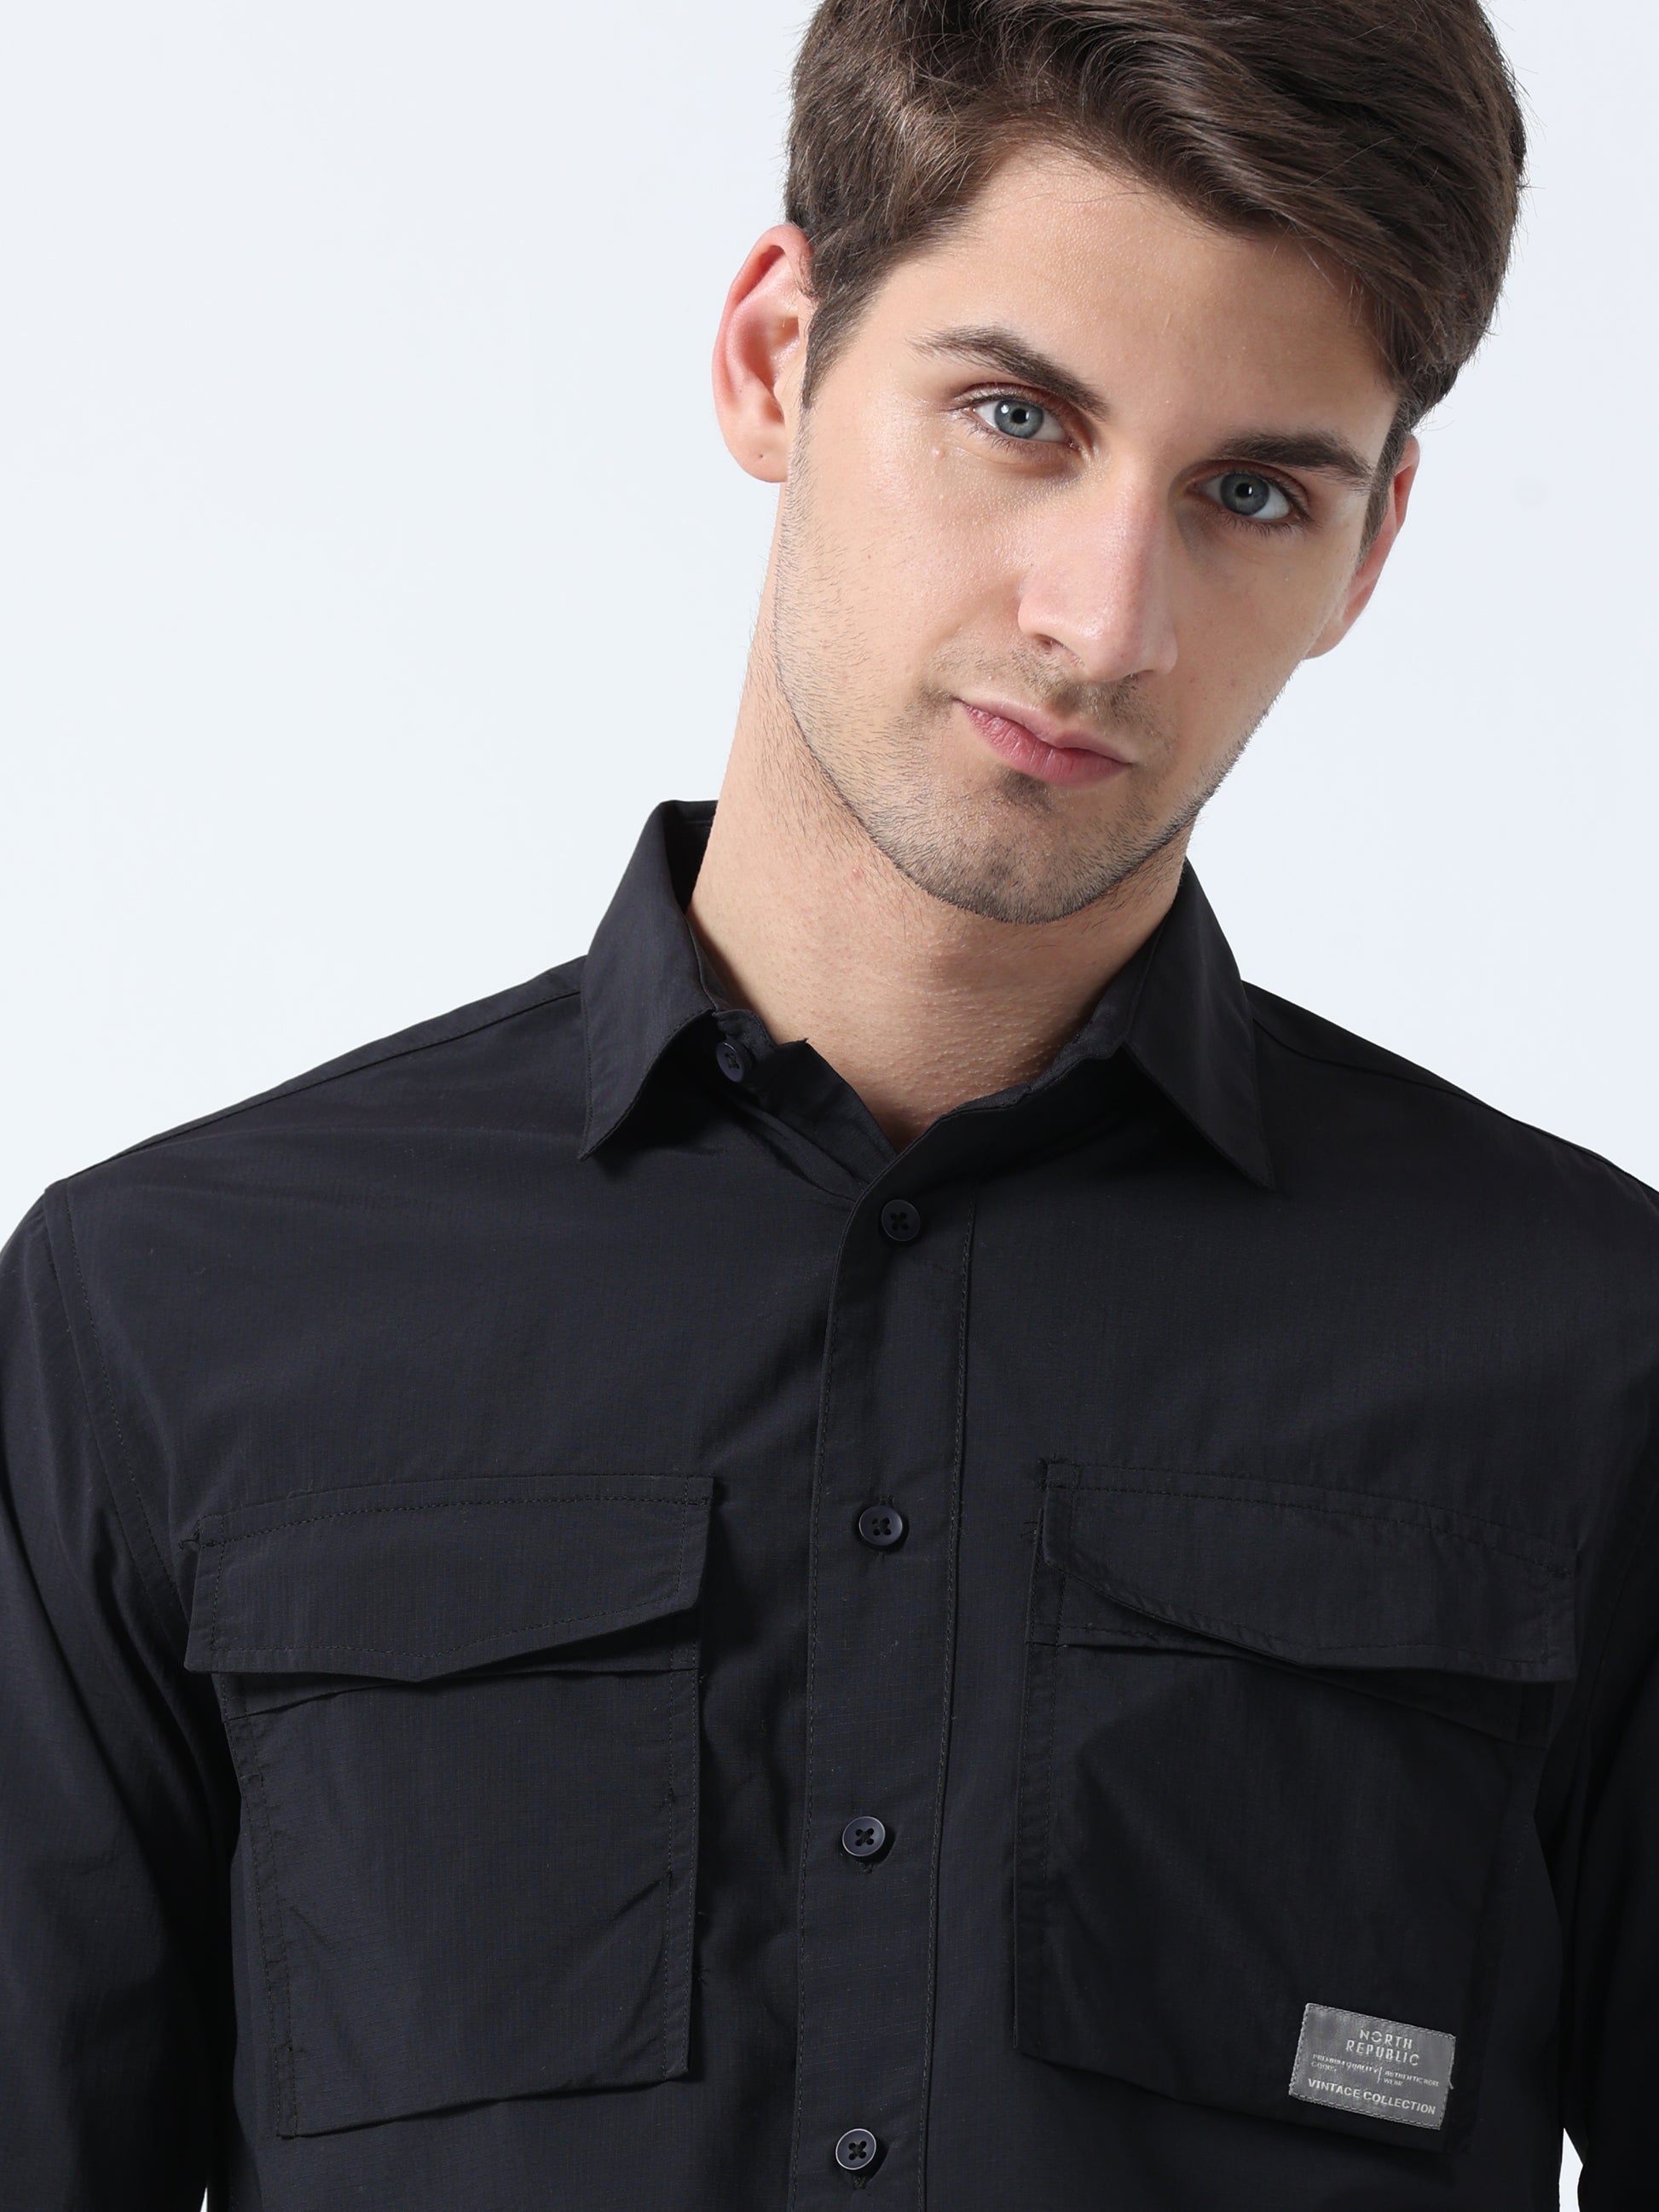 Black Imported Fabric Double-Pocket Full Sleeve Plain Shirt